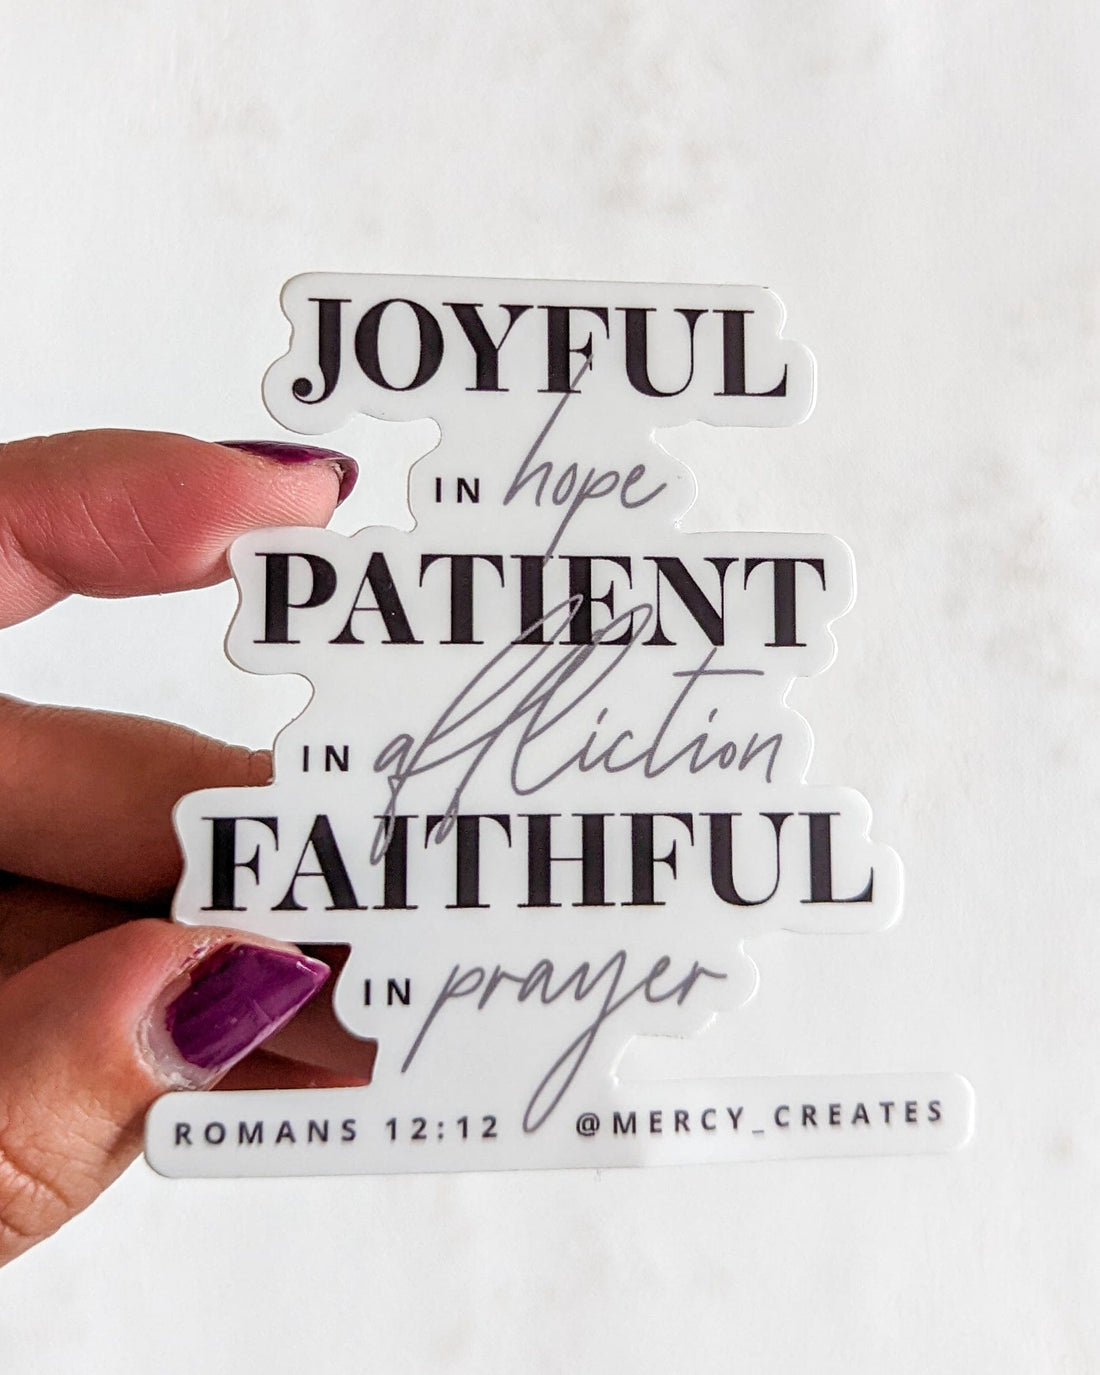 Joyful Patient Faithful - Black and White Vinyl Sticker